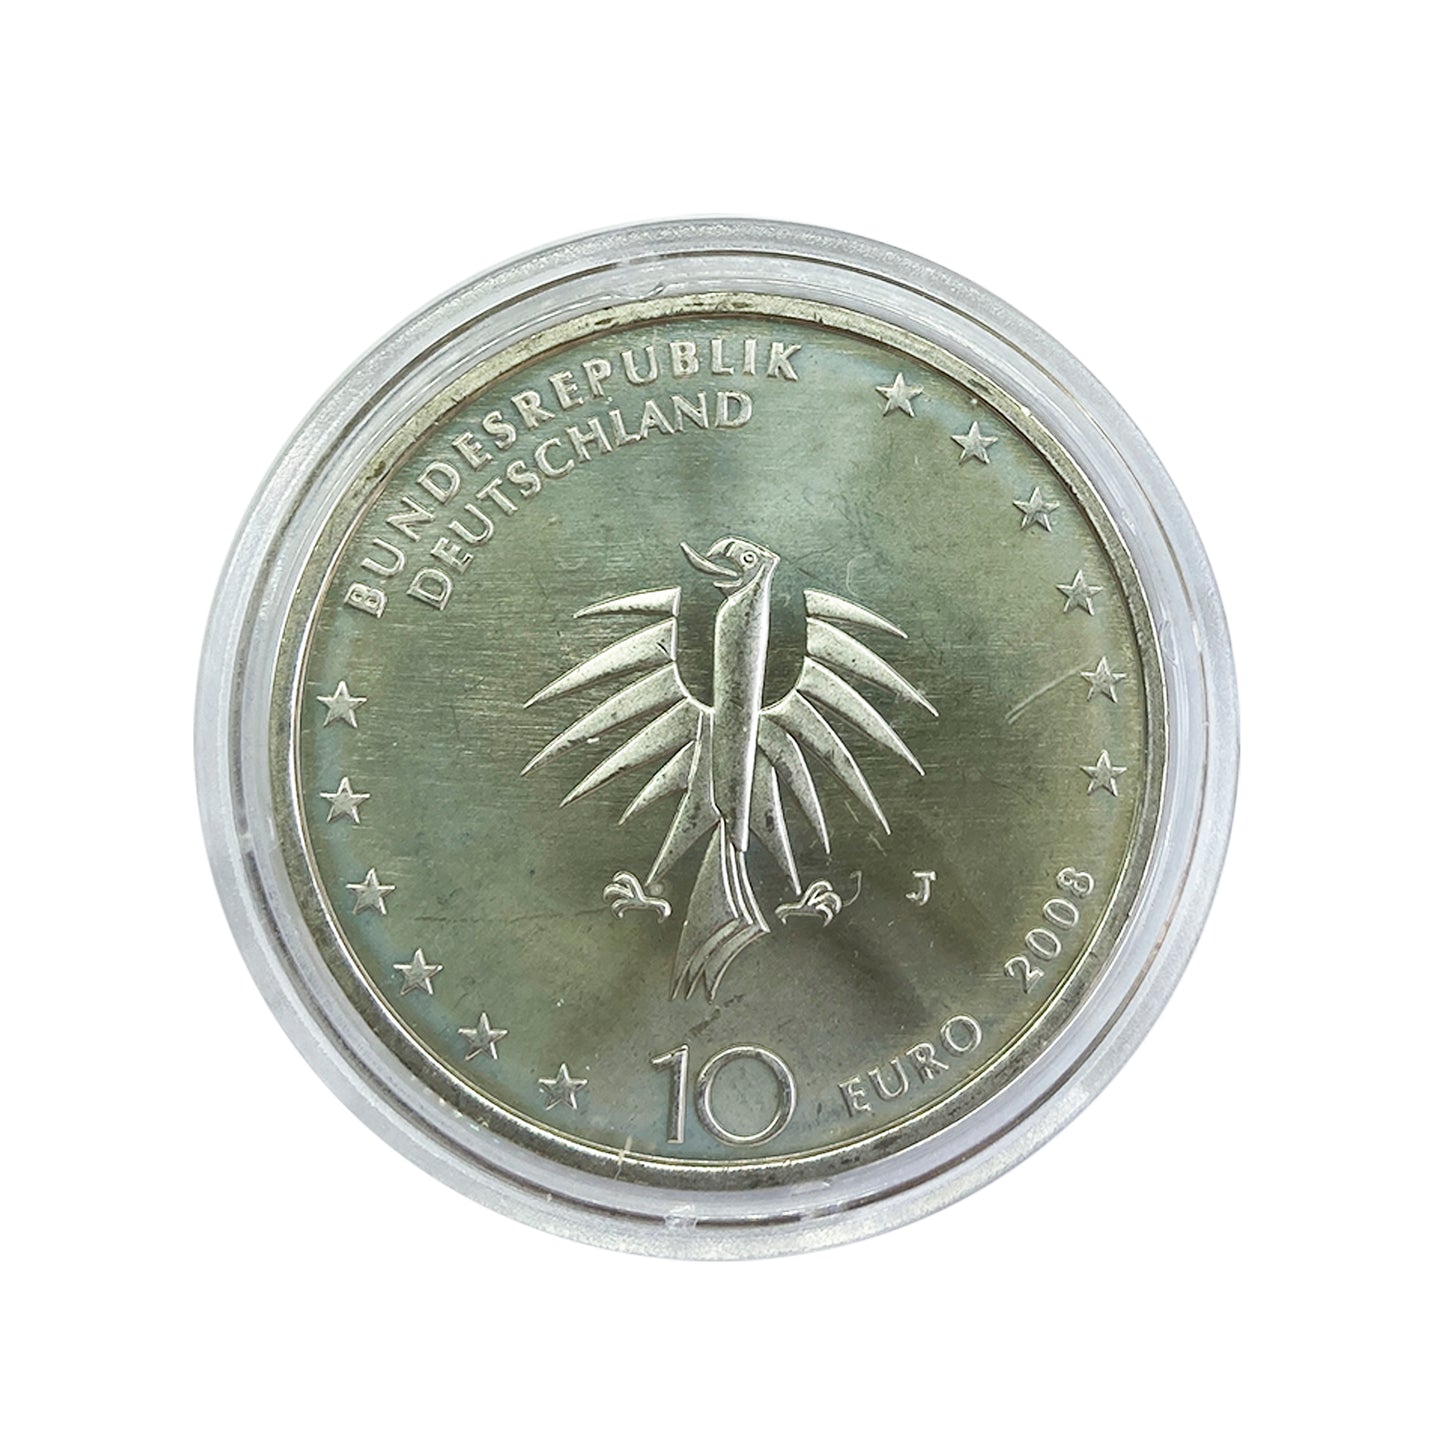 Alemania - Moneda 10 euros plata 2008 - Buque Escuela Gorch Fock II